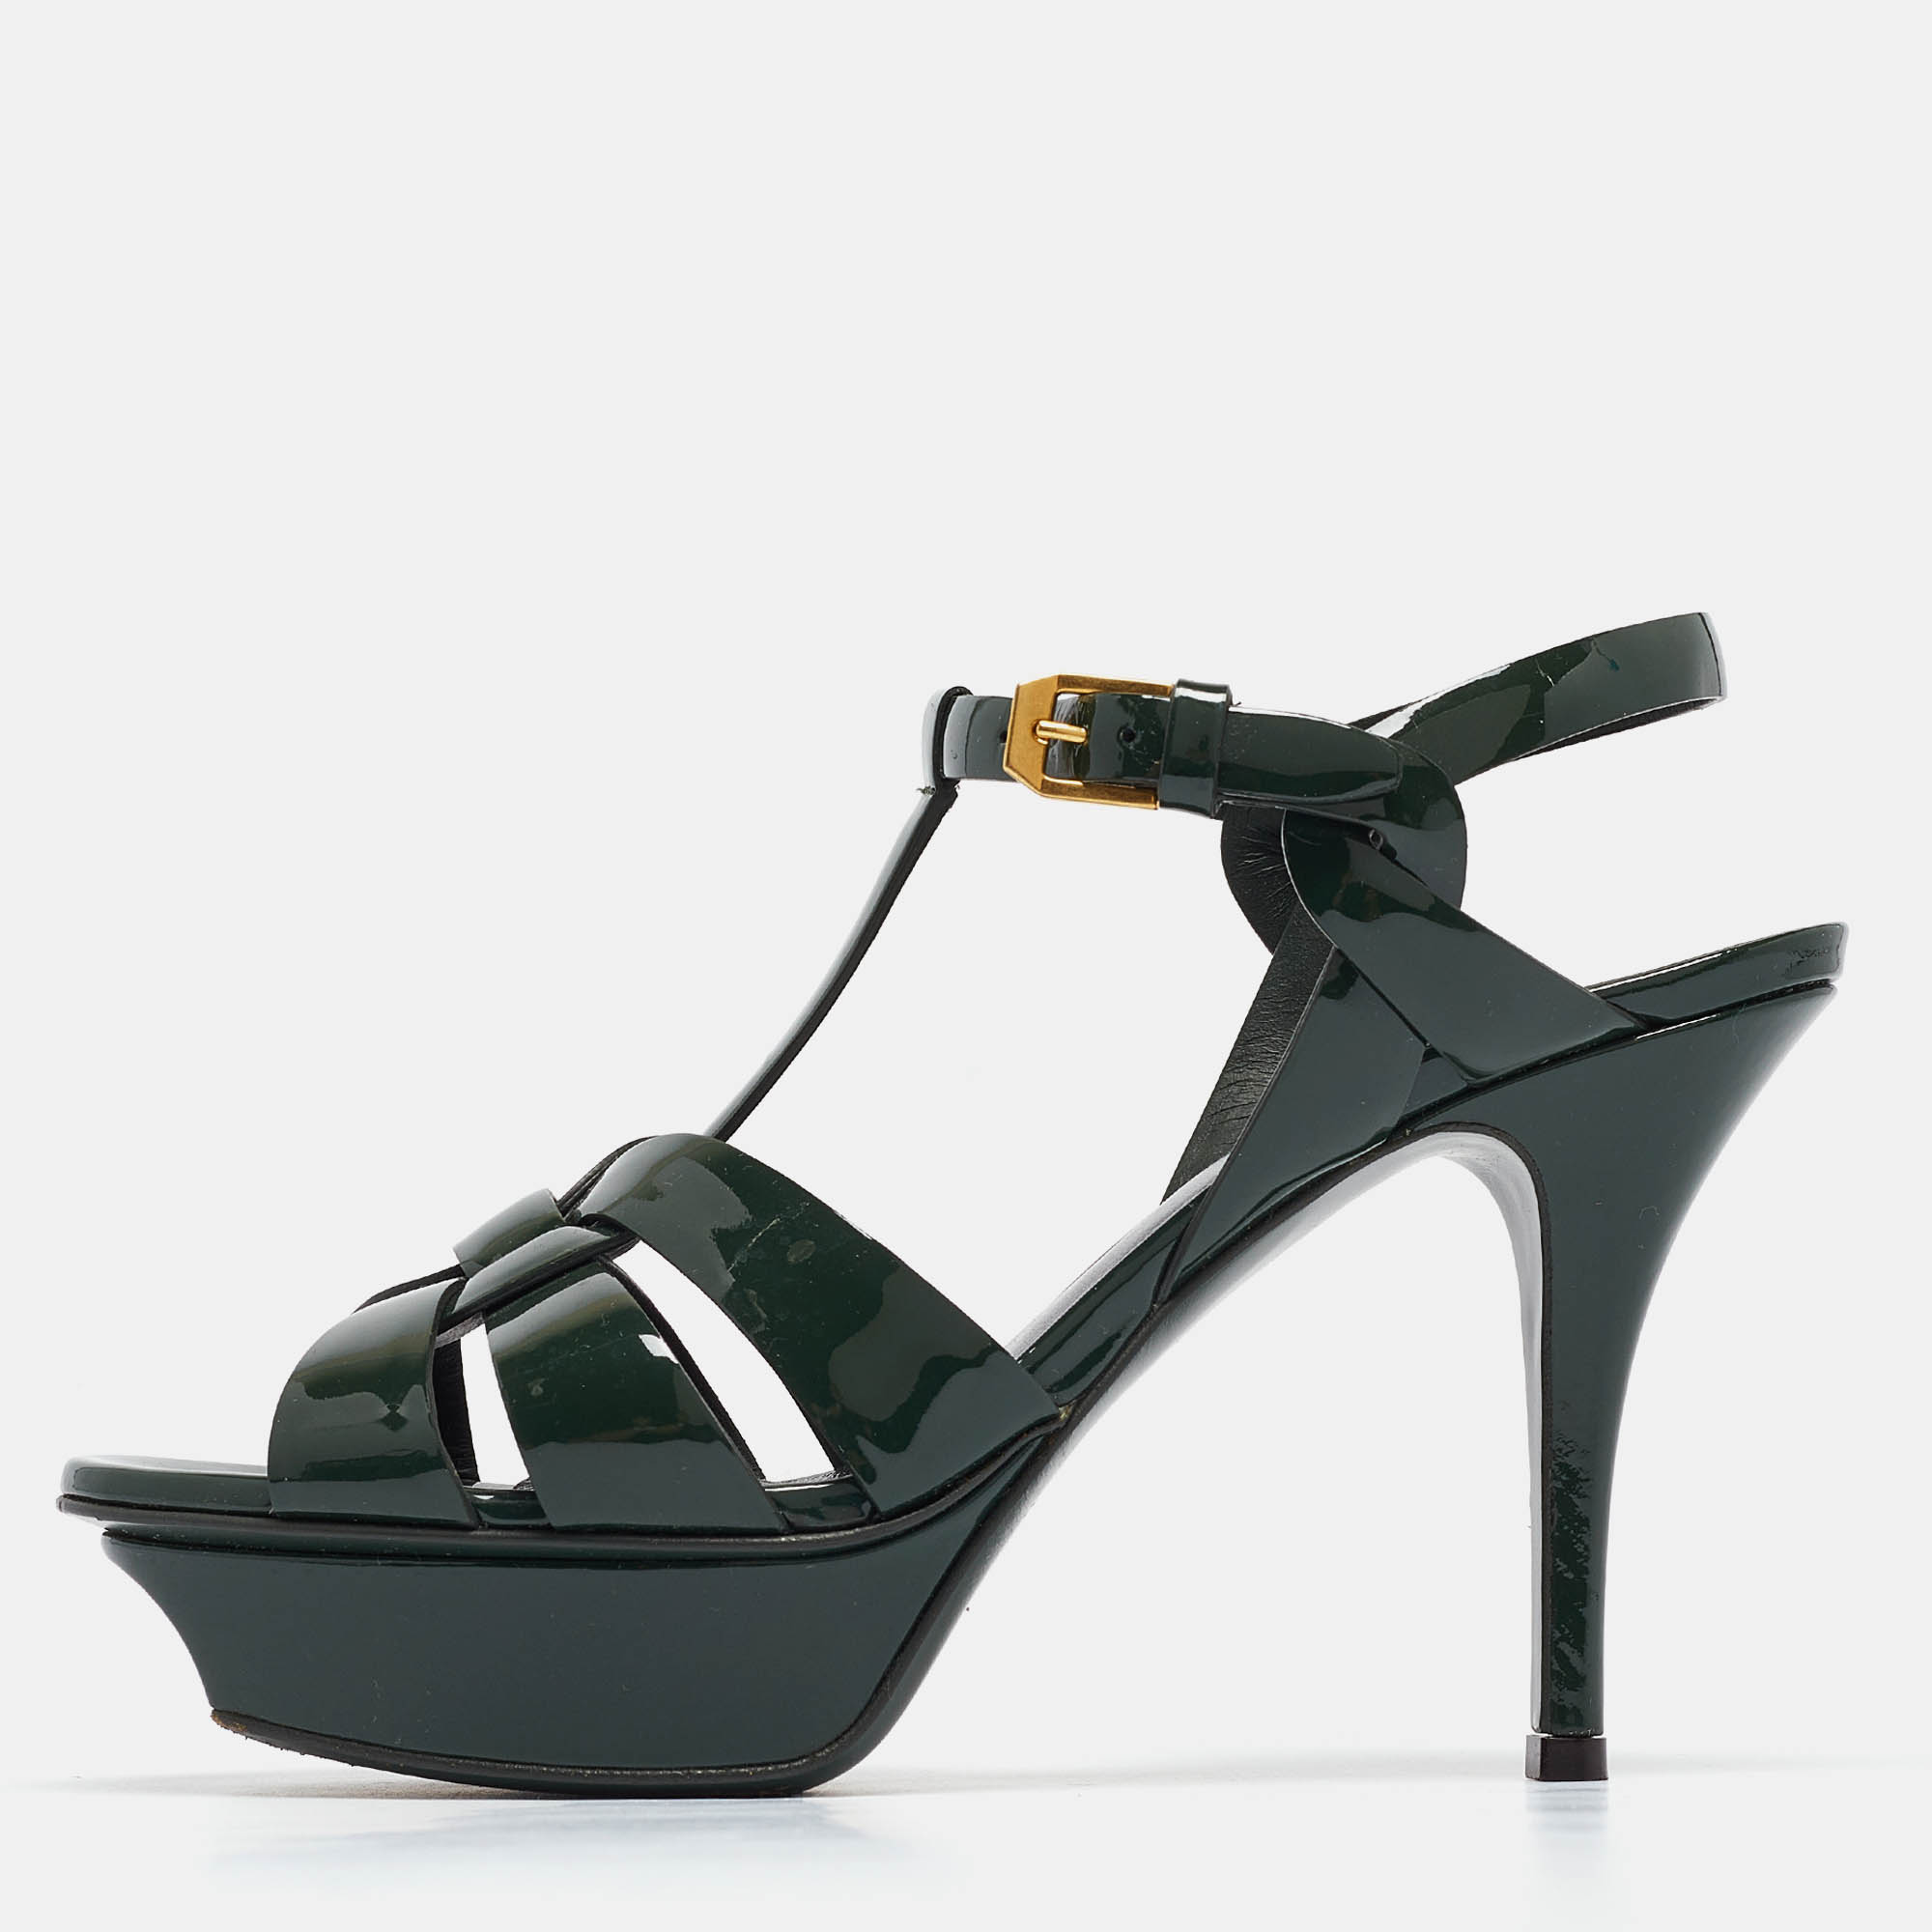 Saint laurent paris saint laurent green patent leather tribute sandals size 36.5